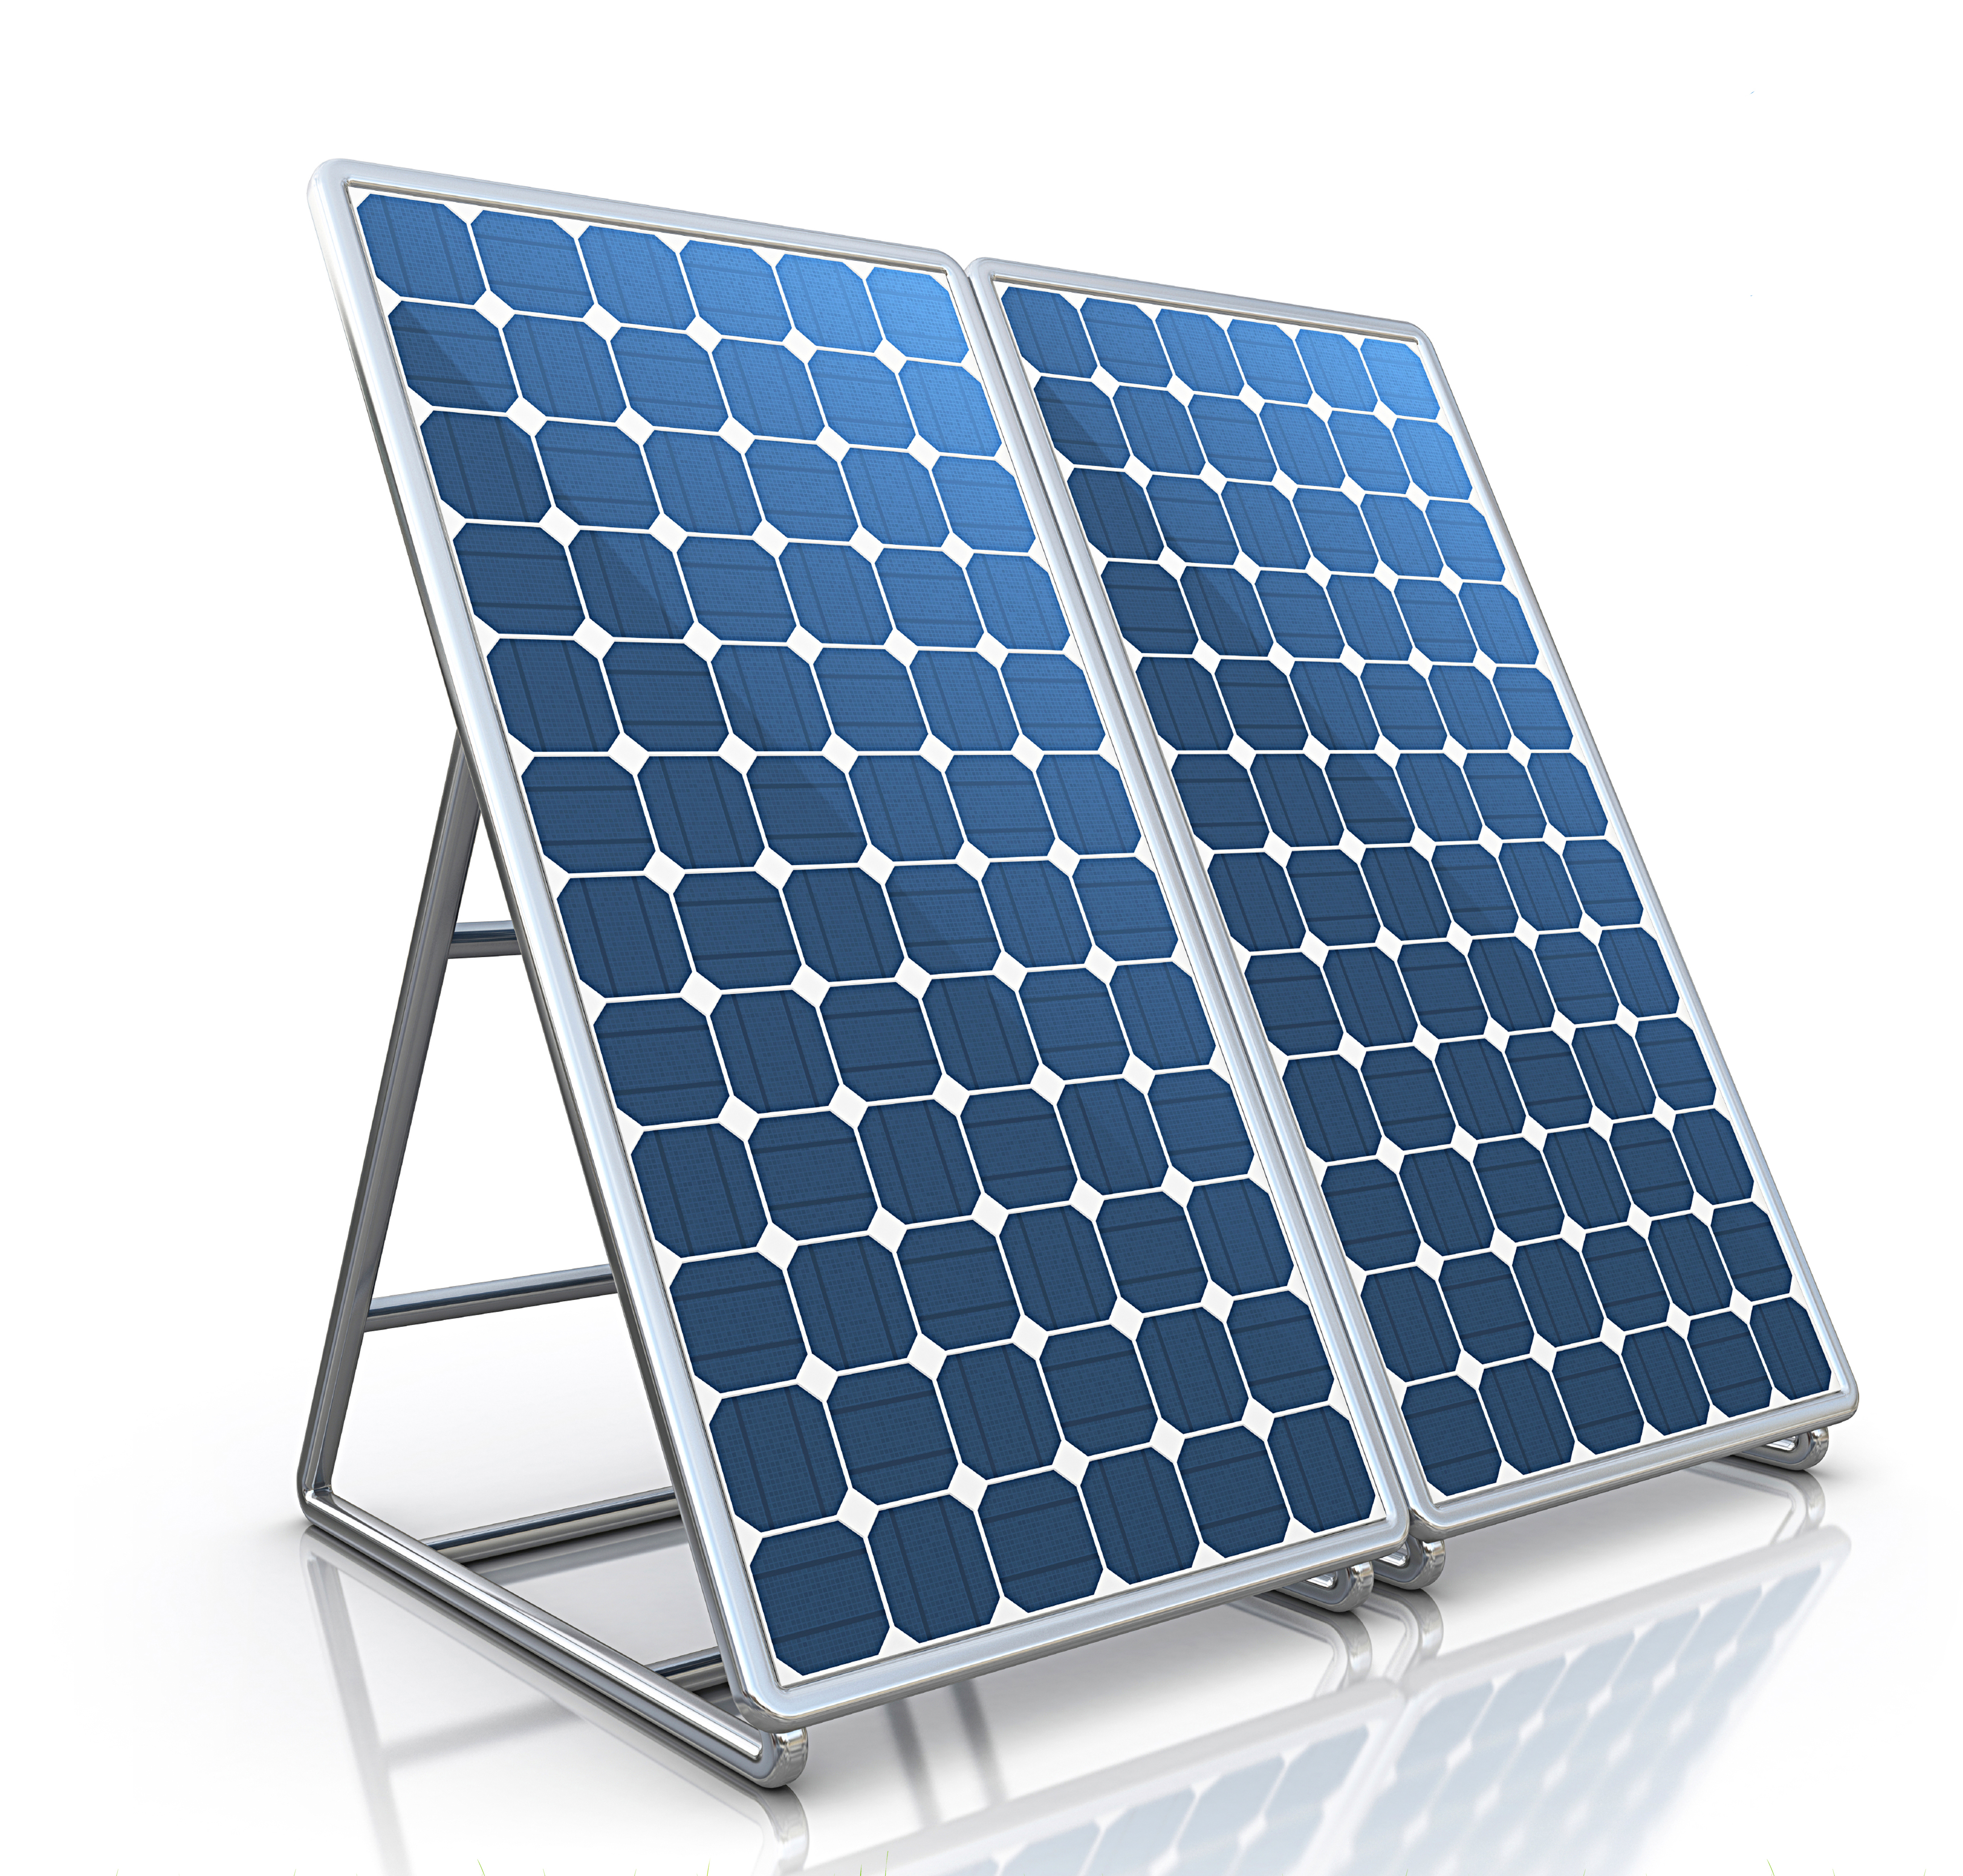 Placa solar fotovoltaica individual 300w 12v no kit